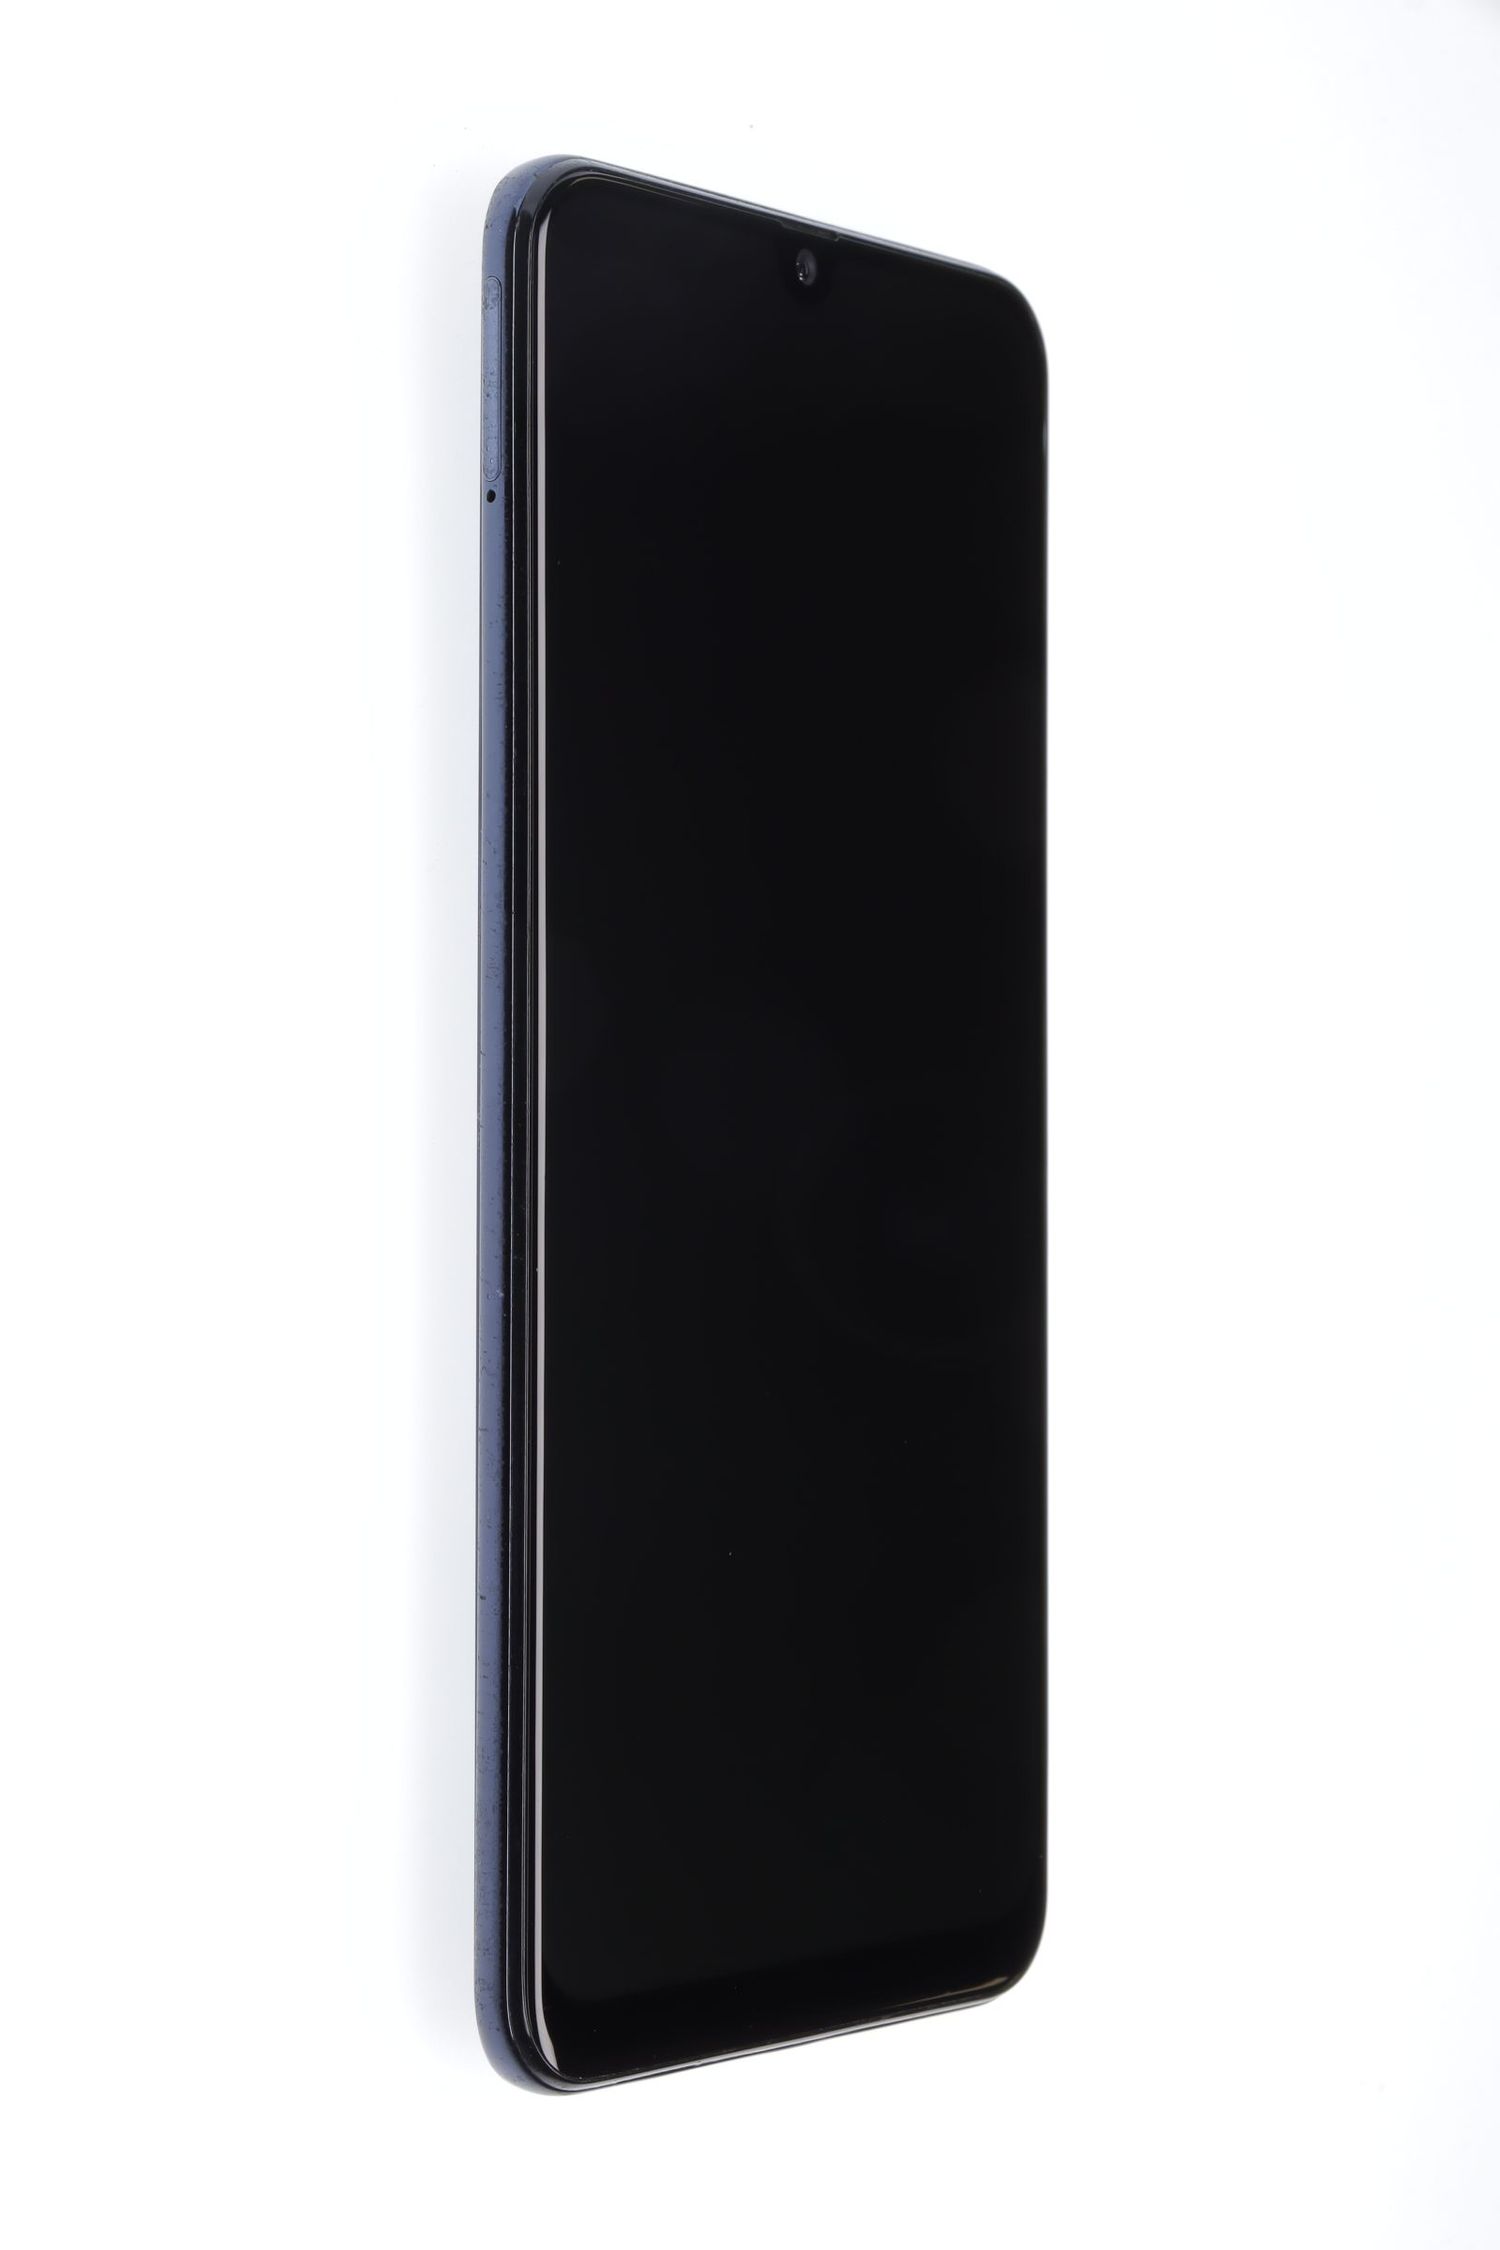 Κινητό τηλέφωνο Samsung Galaxy A50 (2019) Dual Sim, Black, 128 GB, Excelent